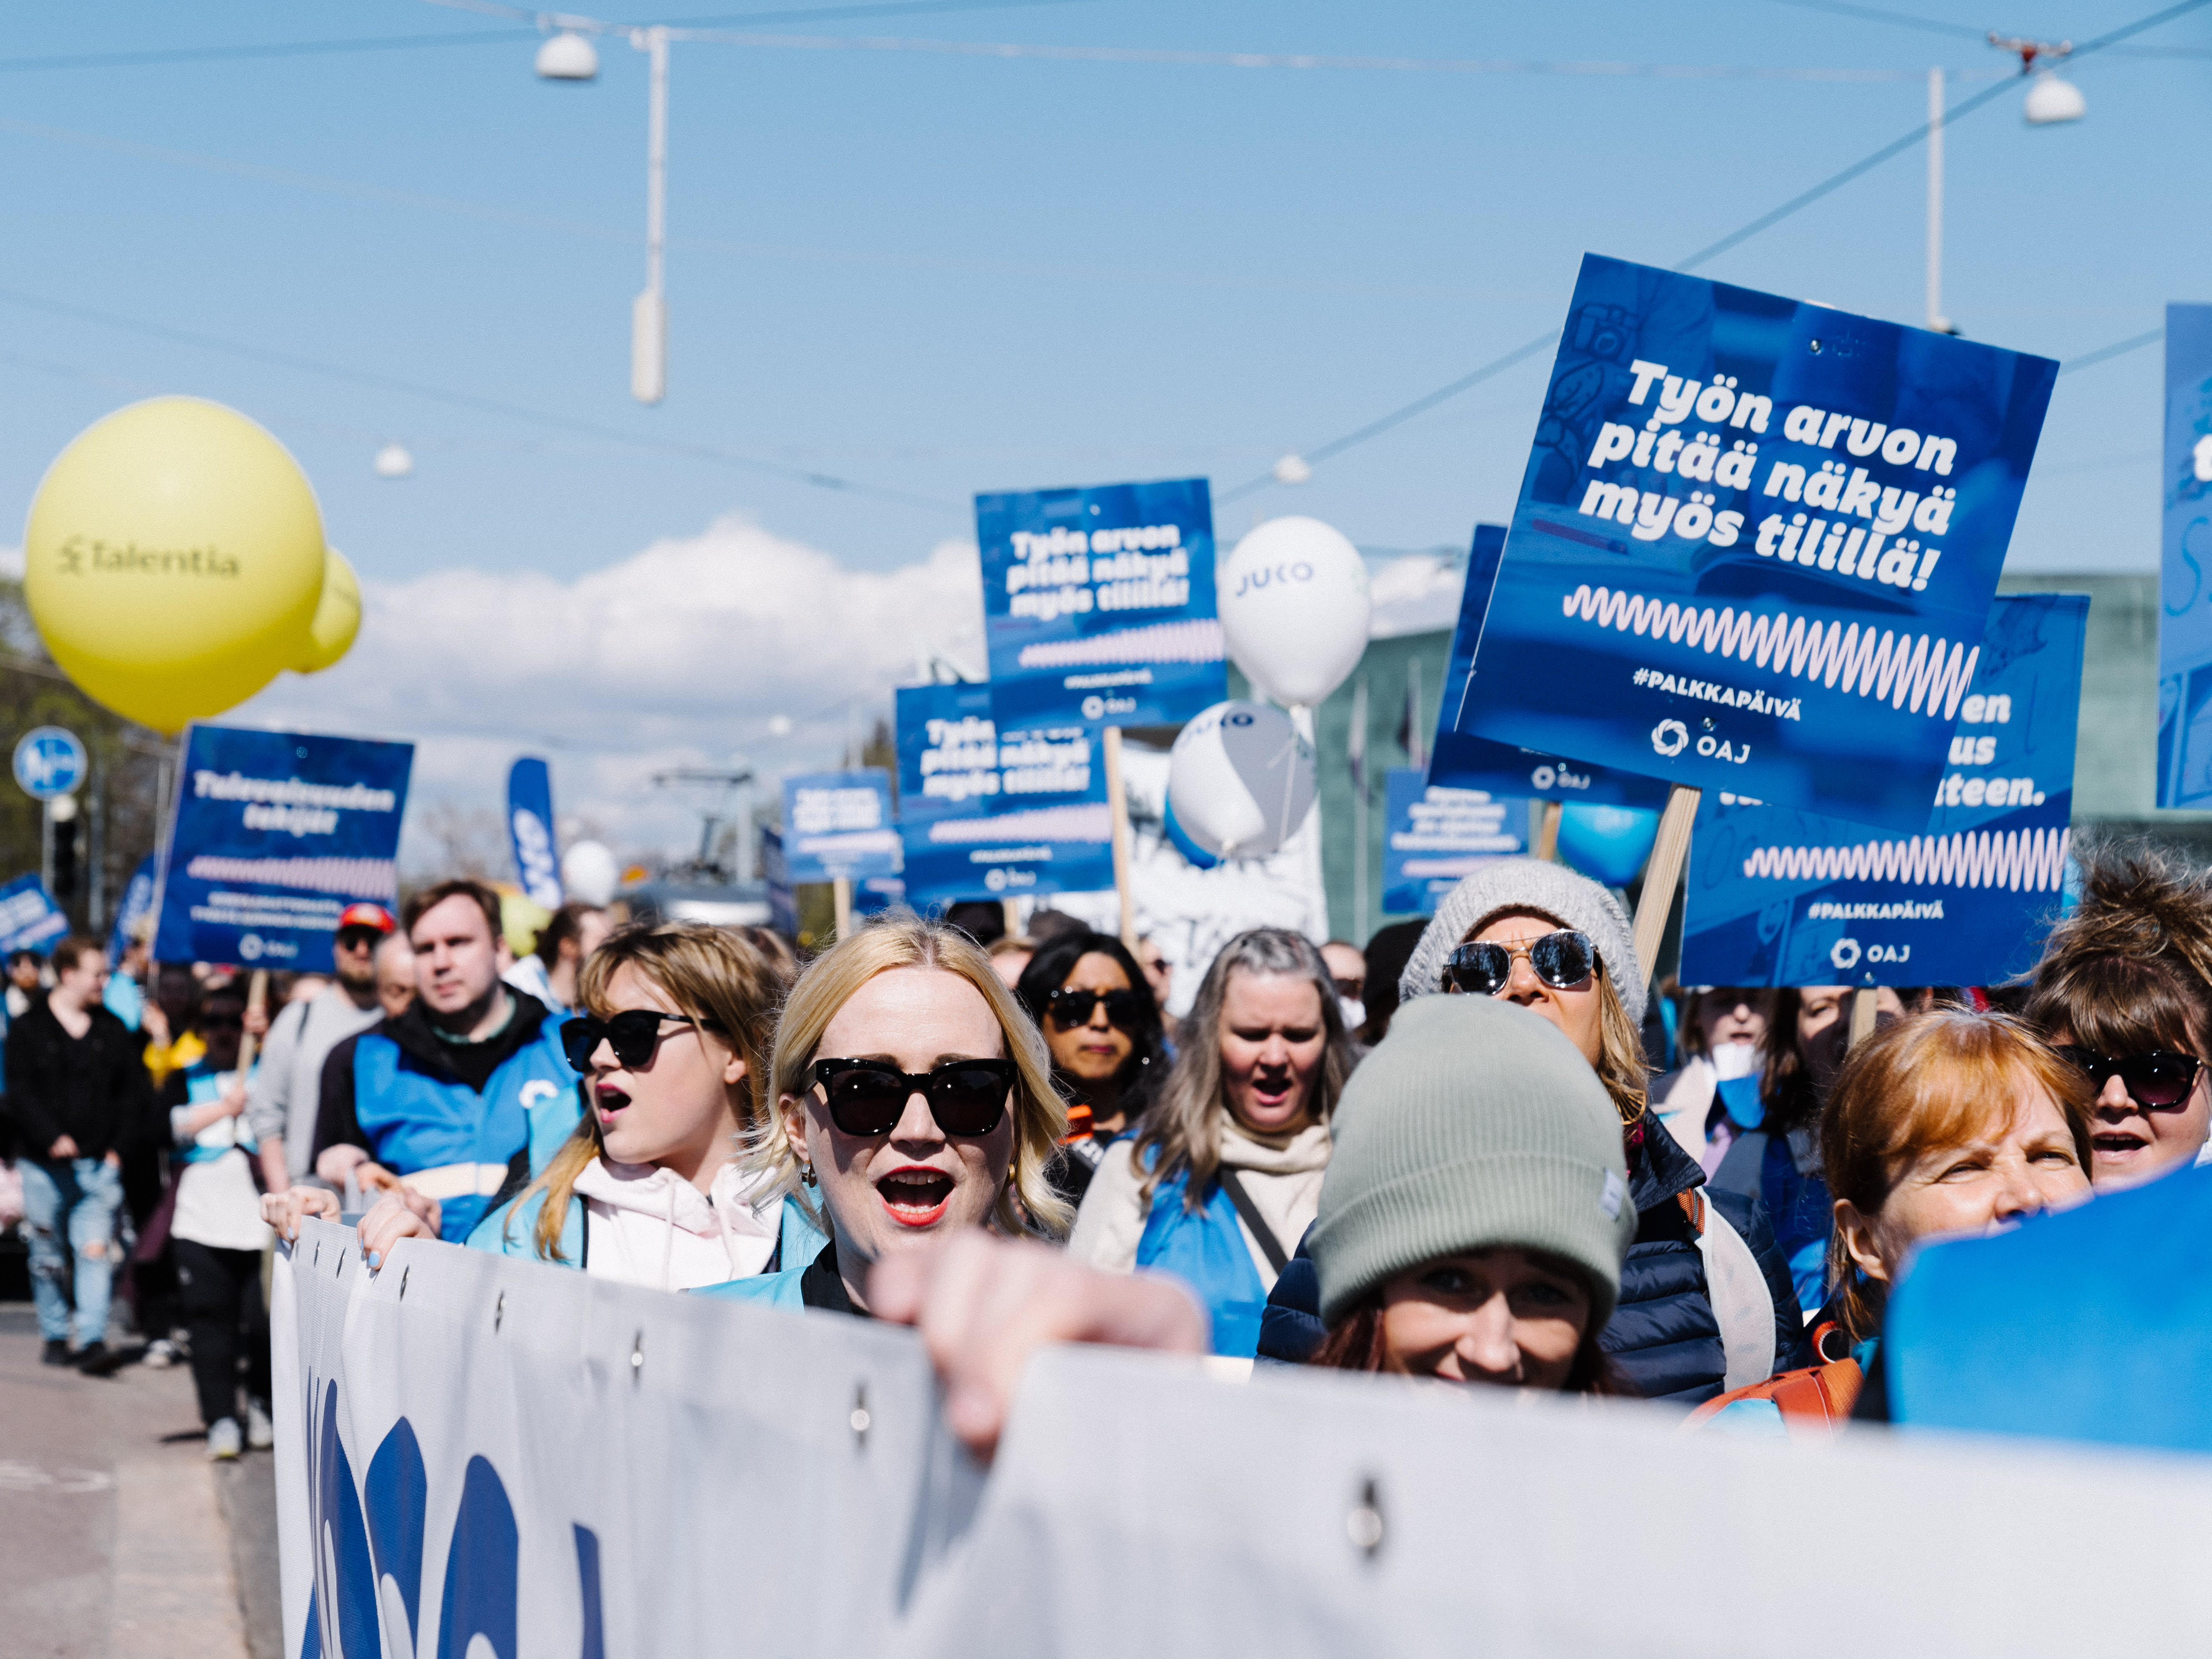 Tausende versammeln sich in Helsinki zu einem kommunalen Marsch